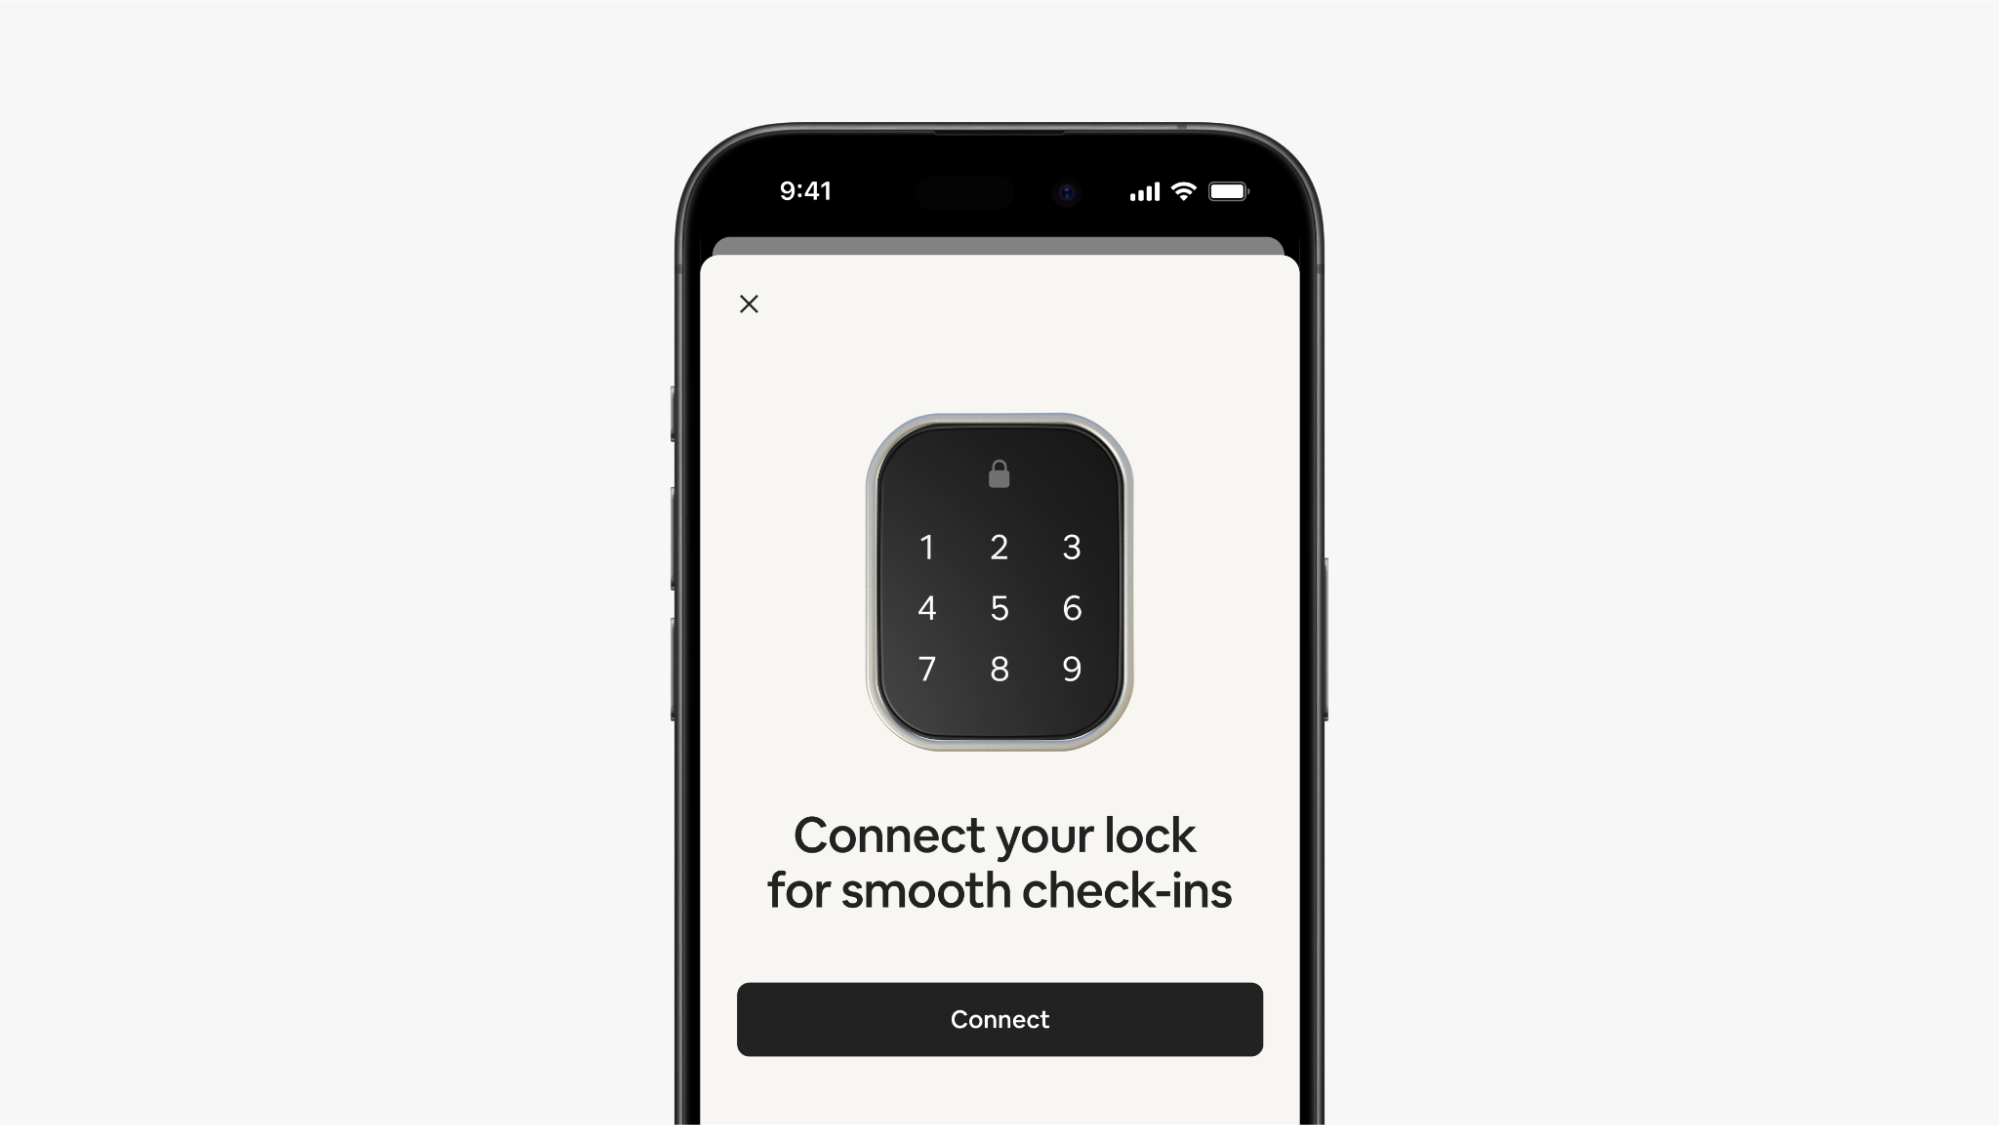 Una pantalla de la aplicación de Airbnb muestra una cerradura inteligente con teclado con los números del 1 al 9 y, debajo, un botón para conectarla.